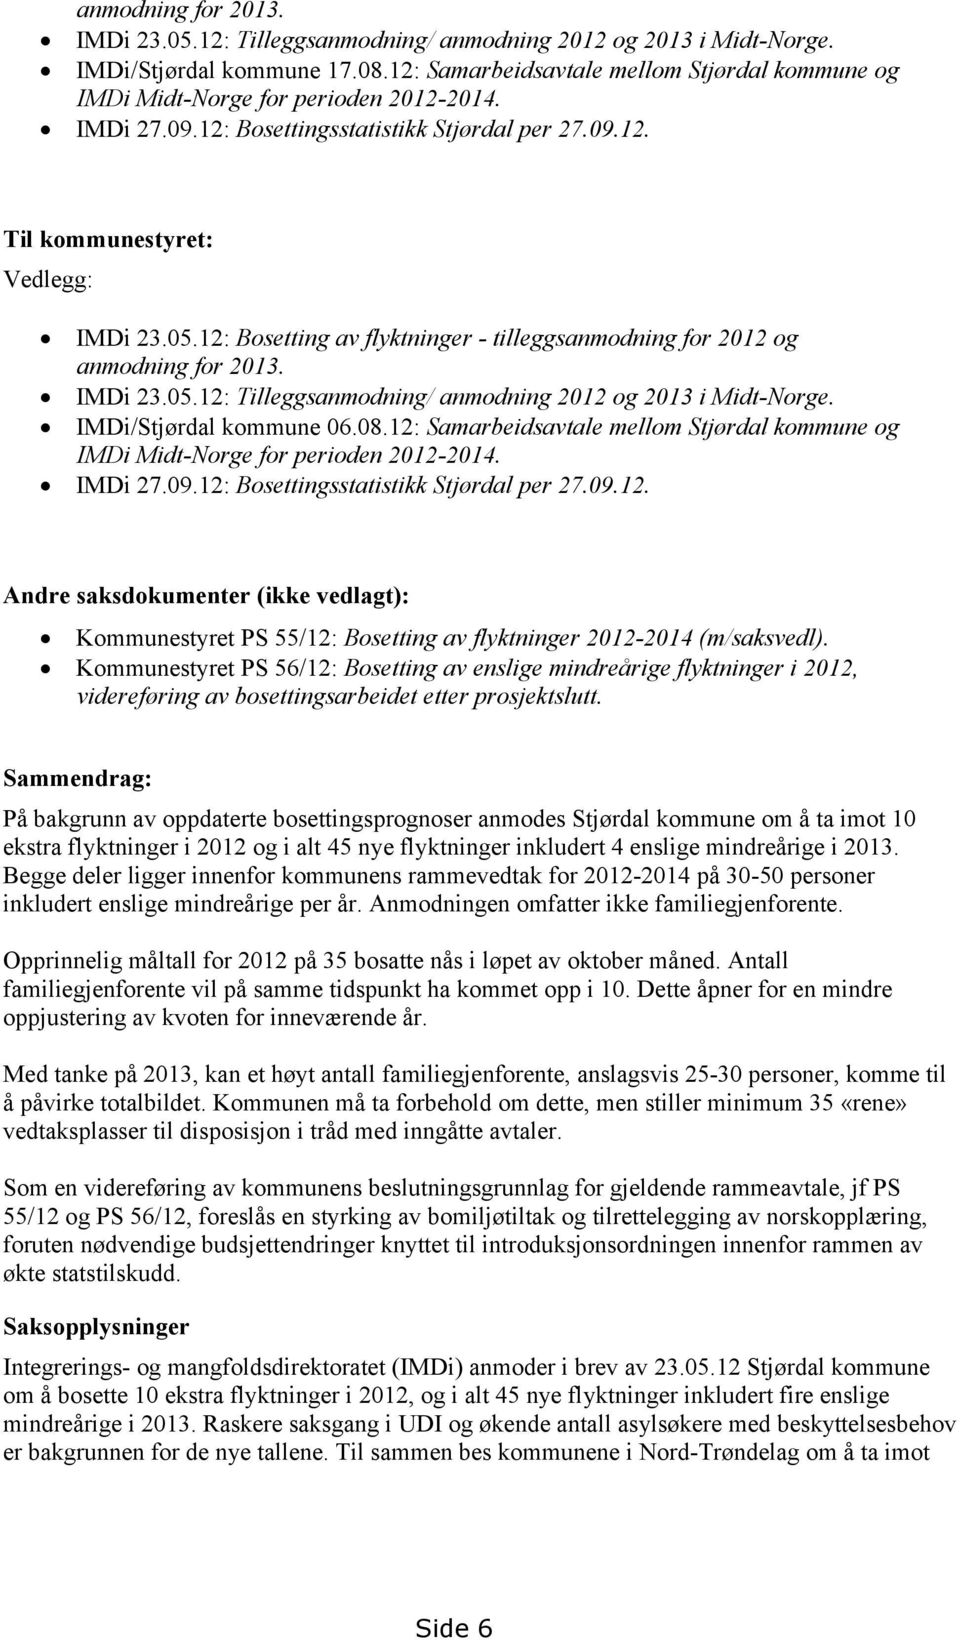 12: Bosetting av flyktninger - tilleggsanmodning for 2012 og anmodning for 2013. IMDi 23.05.12: Tilleggsanmodning/ anmodning 2012 og 2013 i Midt-Norge. IMDi/Stjørdal kommune 06.08.